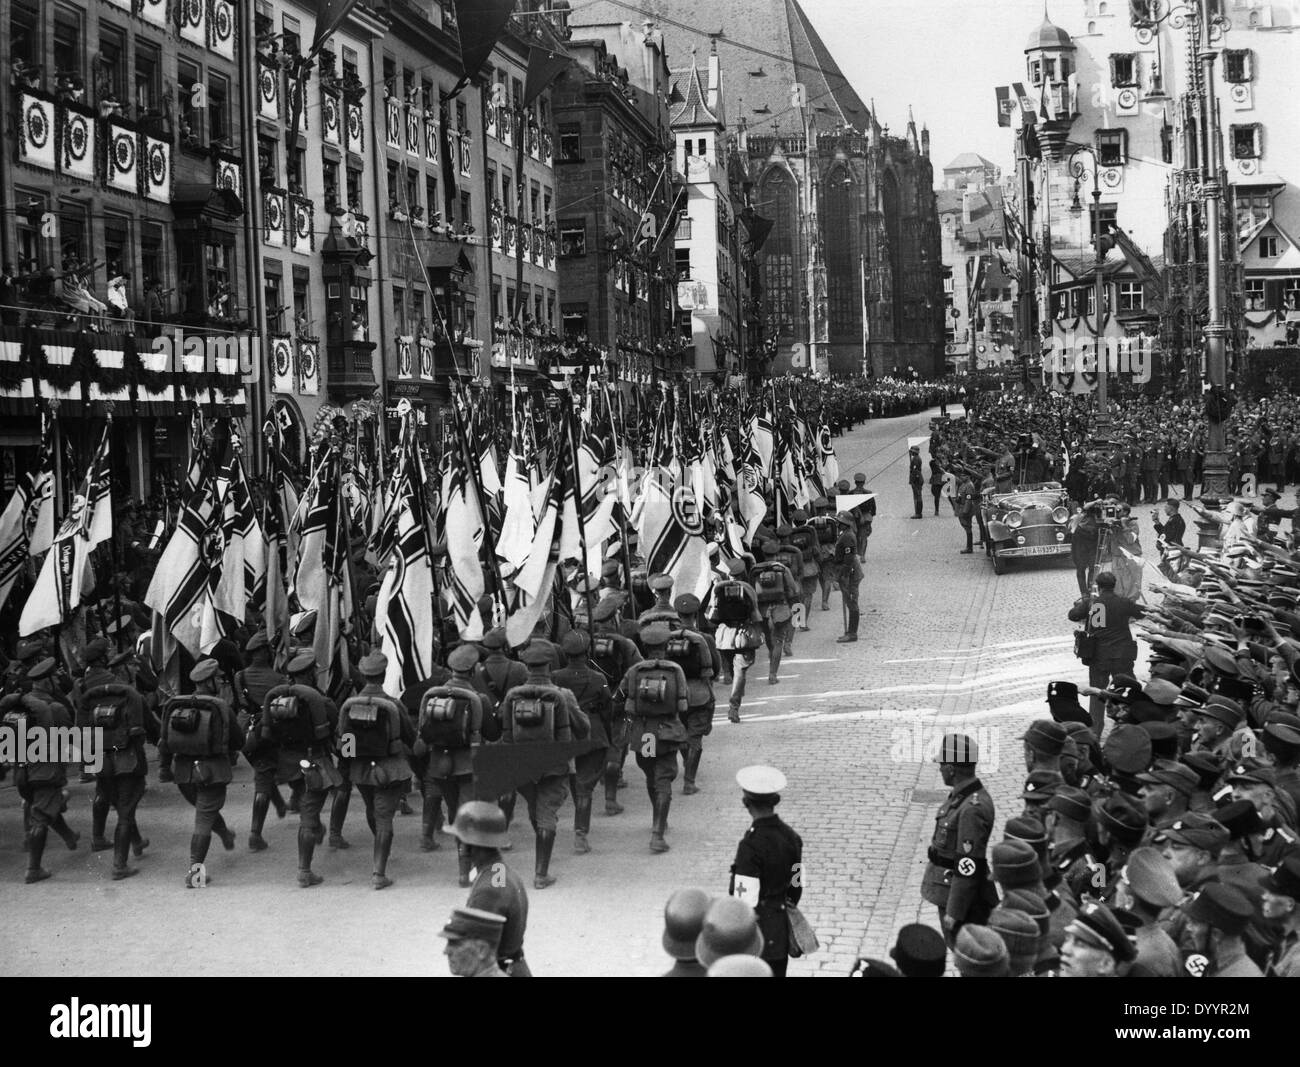 Casque d'acier Les soldats défilent au NSDAP ralley à Nuremberg, 1933 Banque D'Images